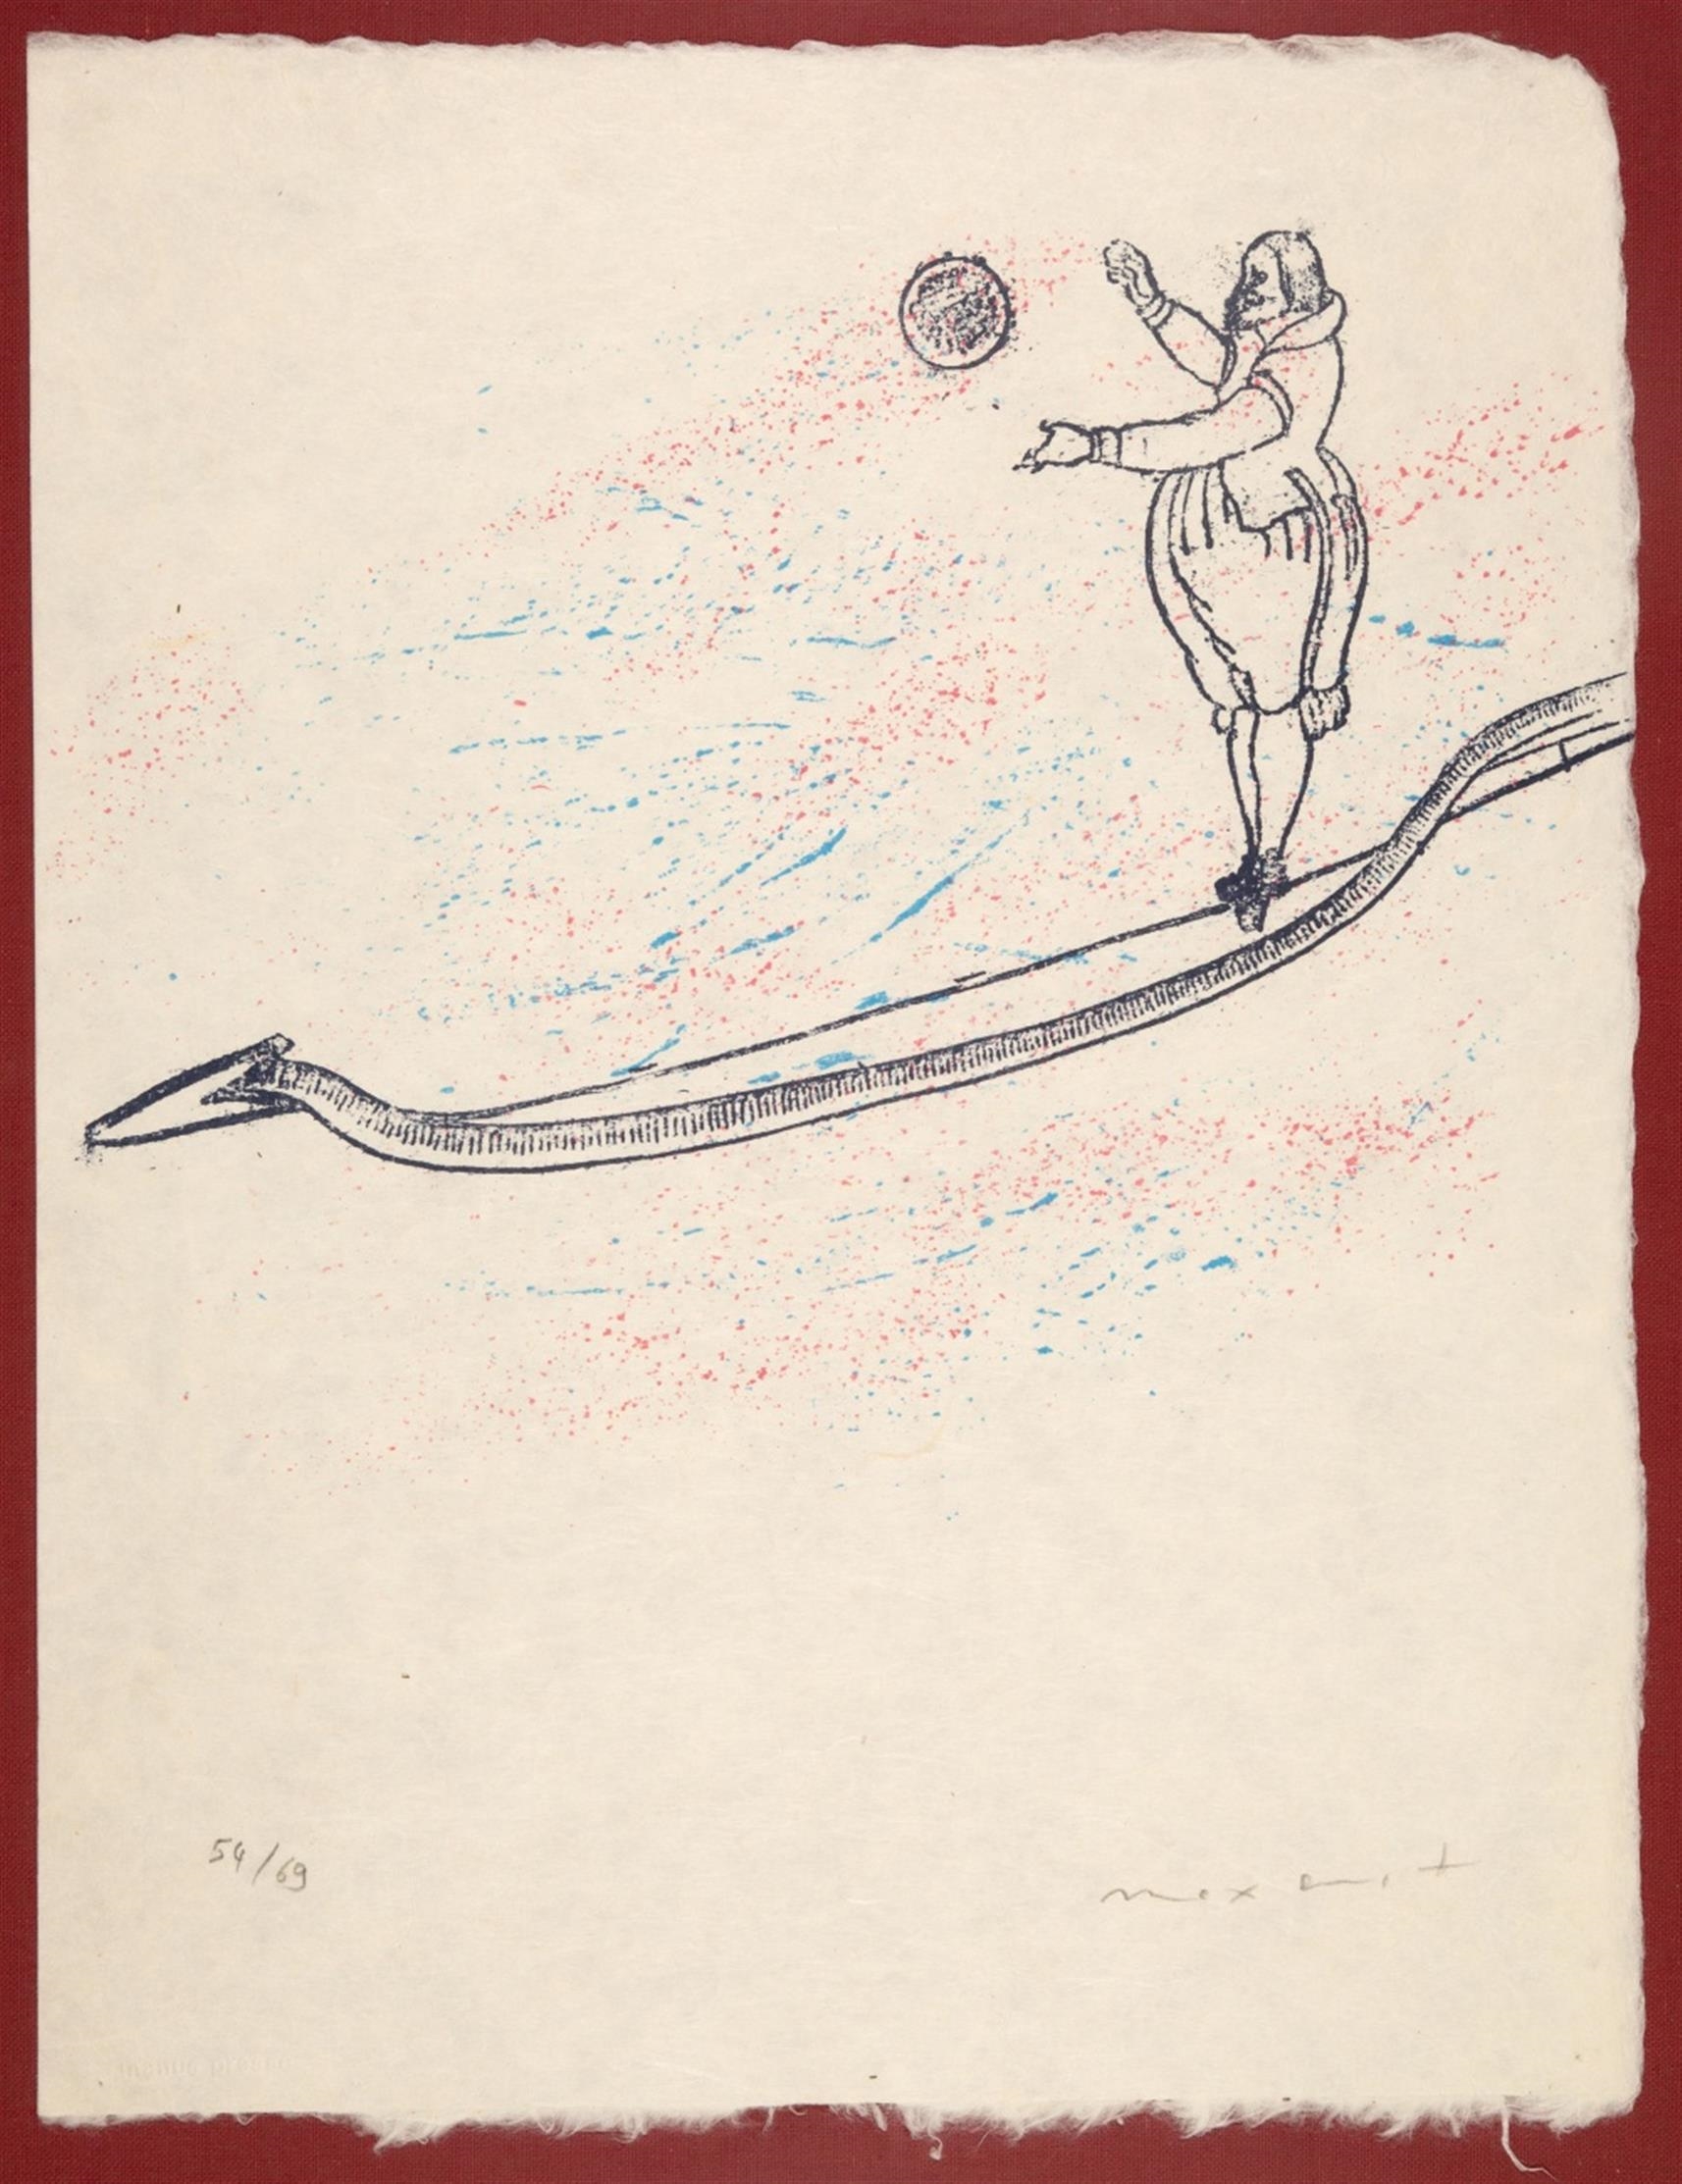 ZU: LEWIS CARROLLS WUNDERHORN by Max Ernst, 1970